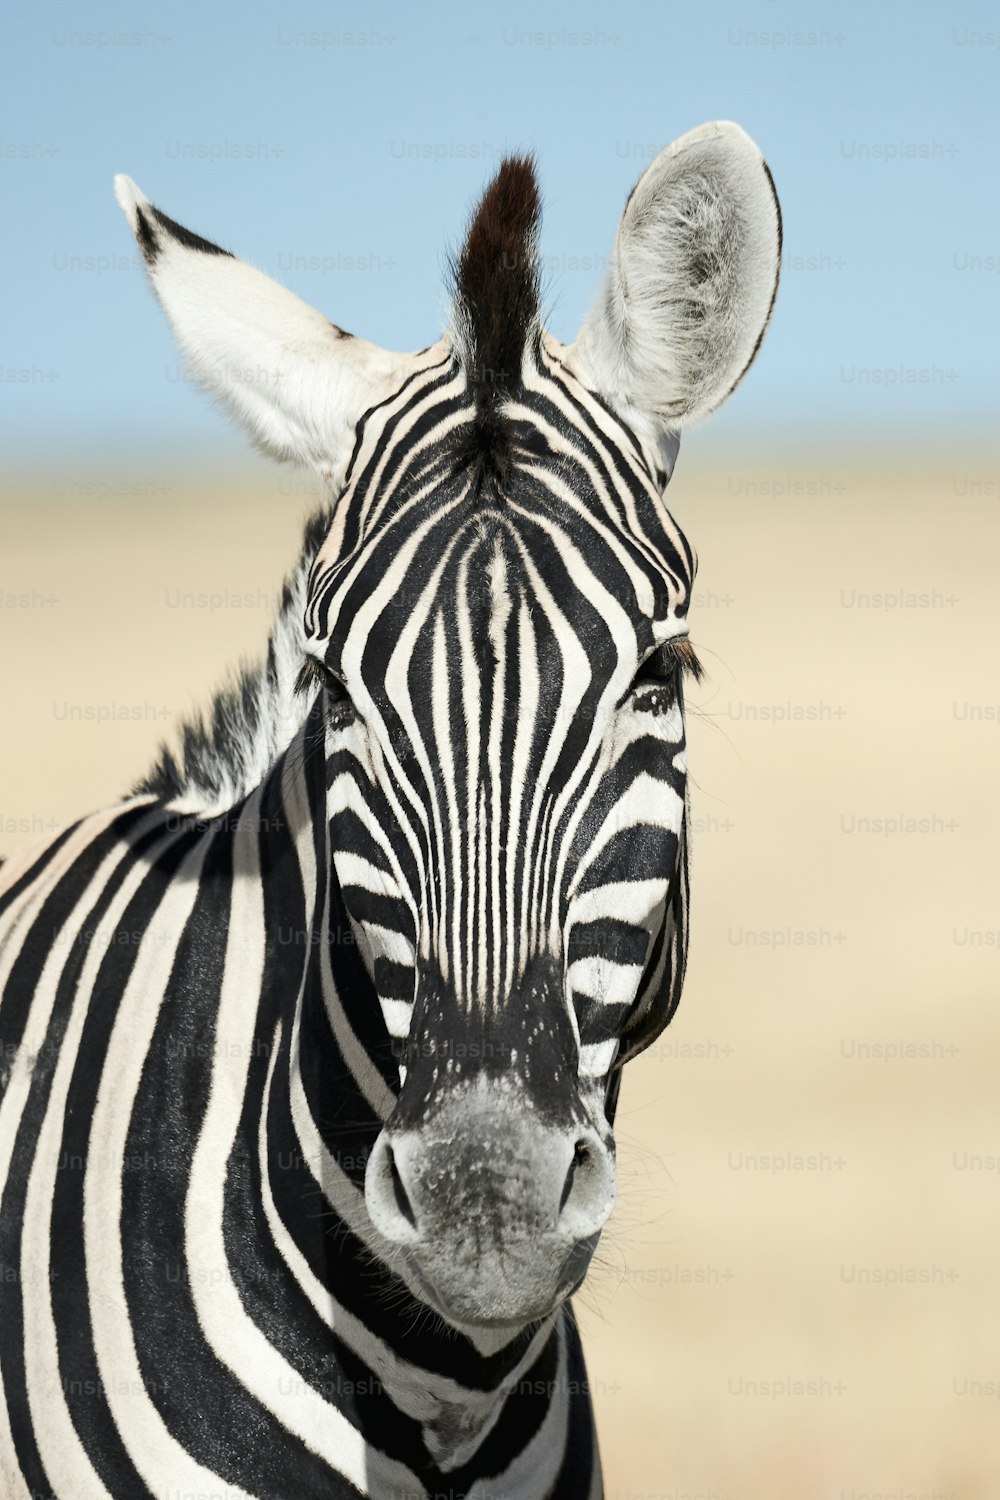 Ritratto di una bella zebra. Zebra fotografata in Namibia.